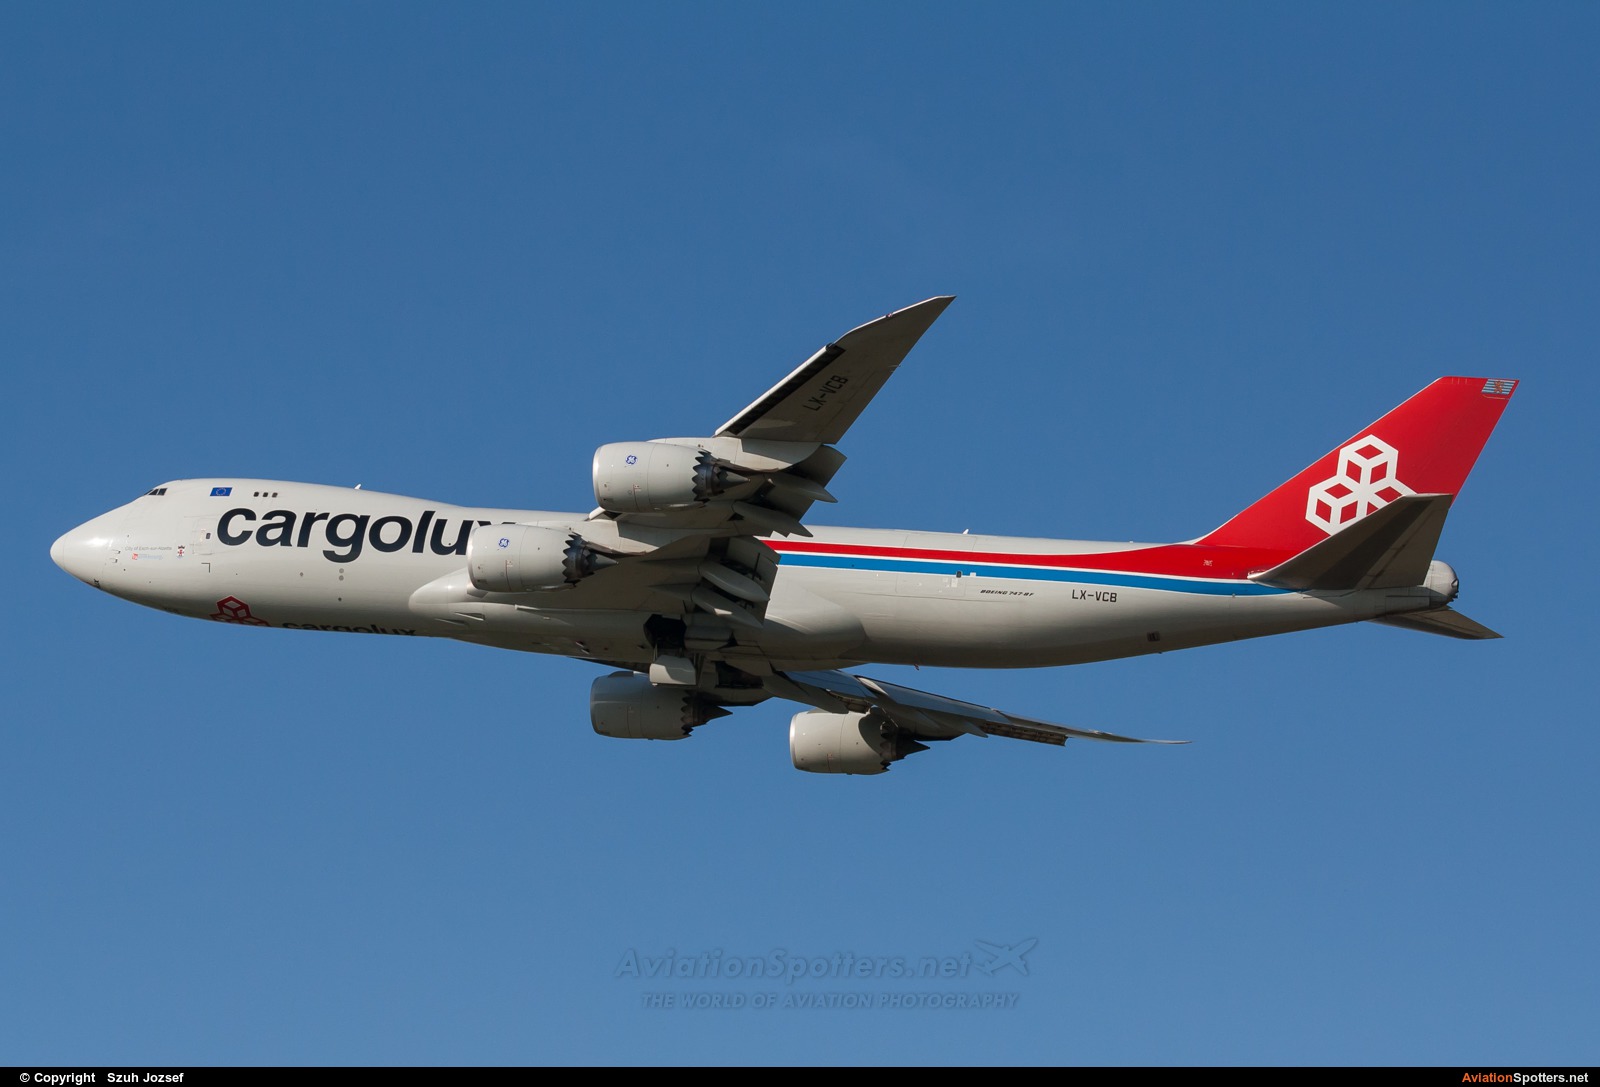 Cargolux  -  747-8F  (LX-VCB) By Szuh Jozsef (szuh jozsef)